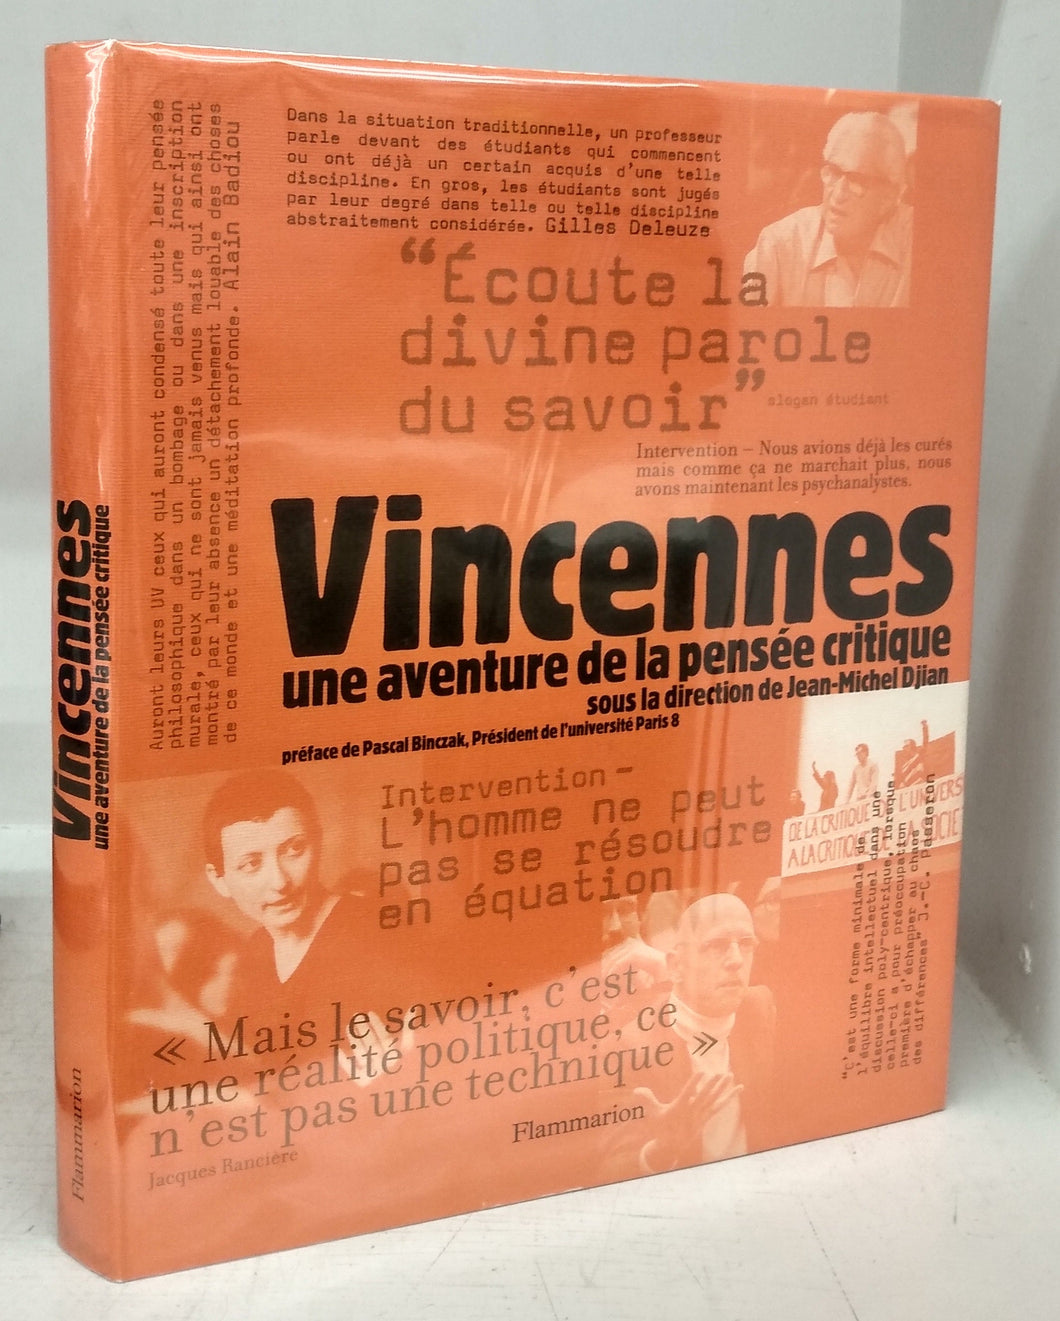 Vincennes: une aventure de la pensée critique sous la direction de Jean-Michel Dijan